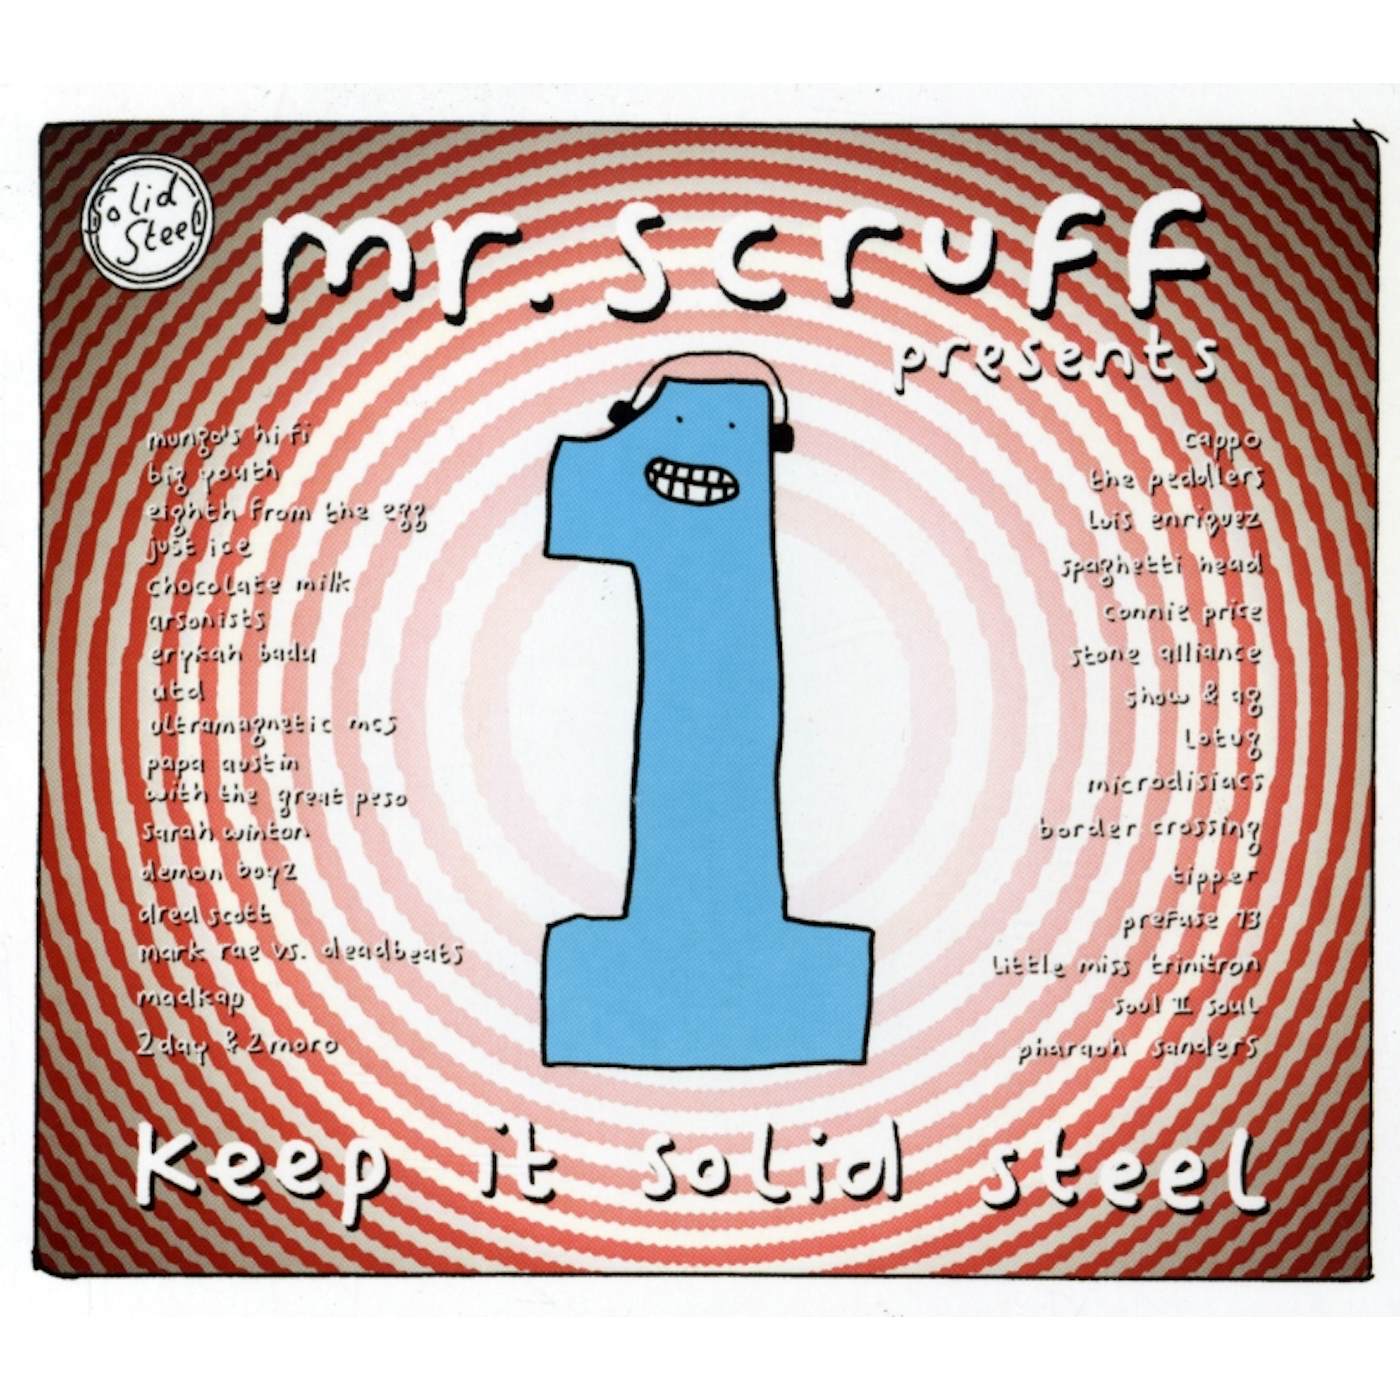 Mr. Scruff KEEP IT SOLID STEEL CD